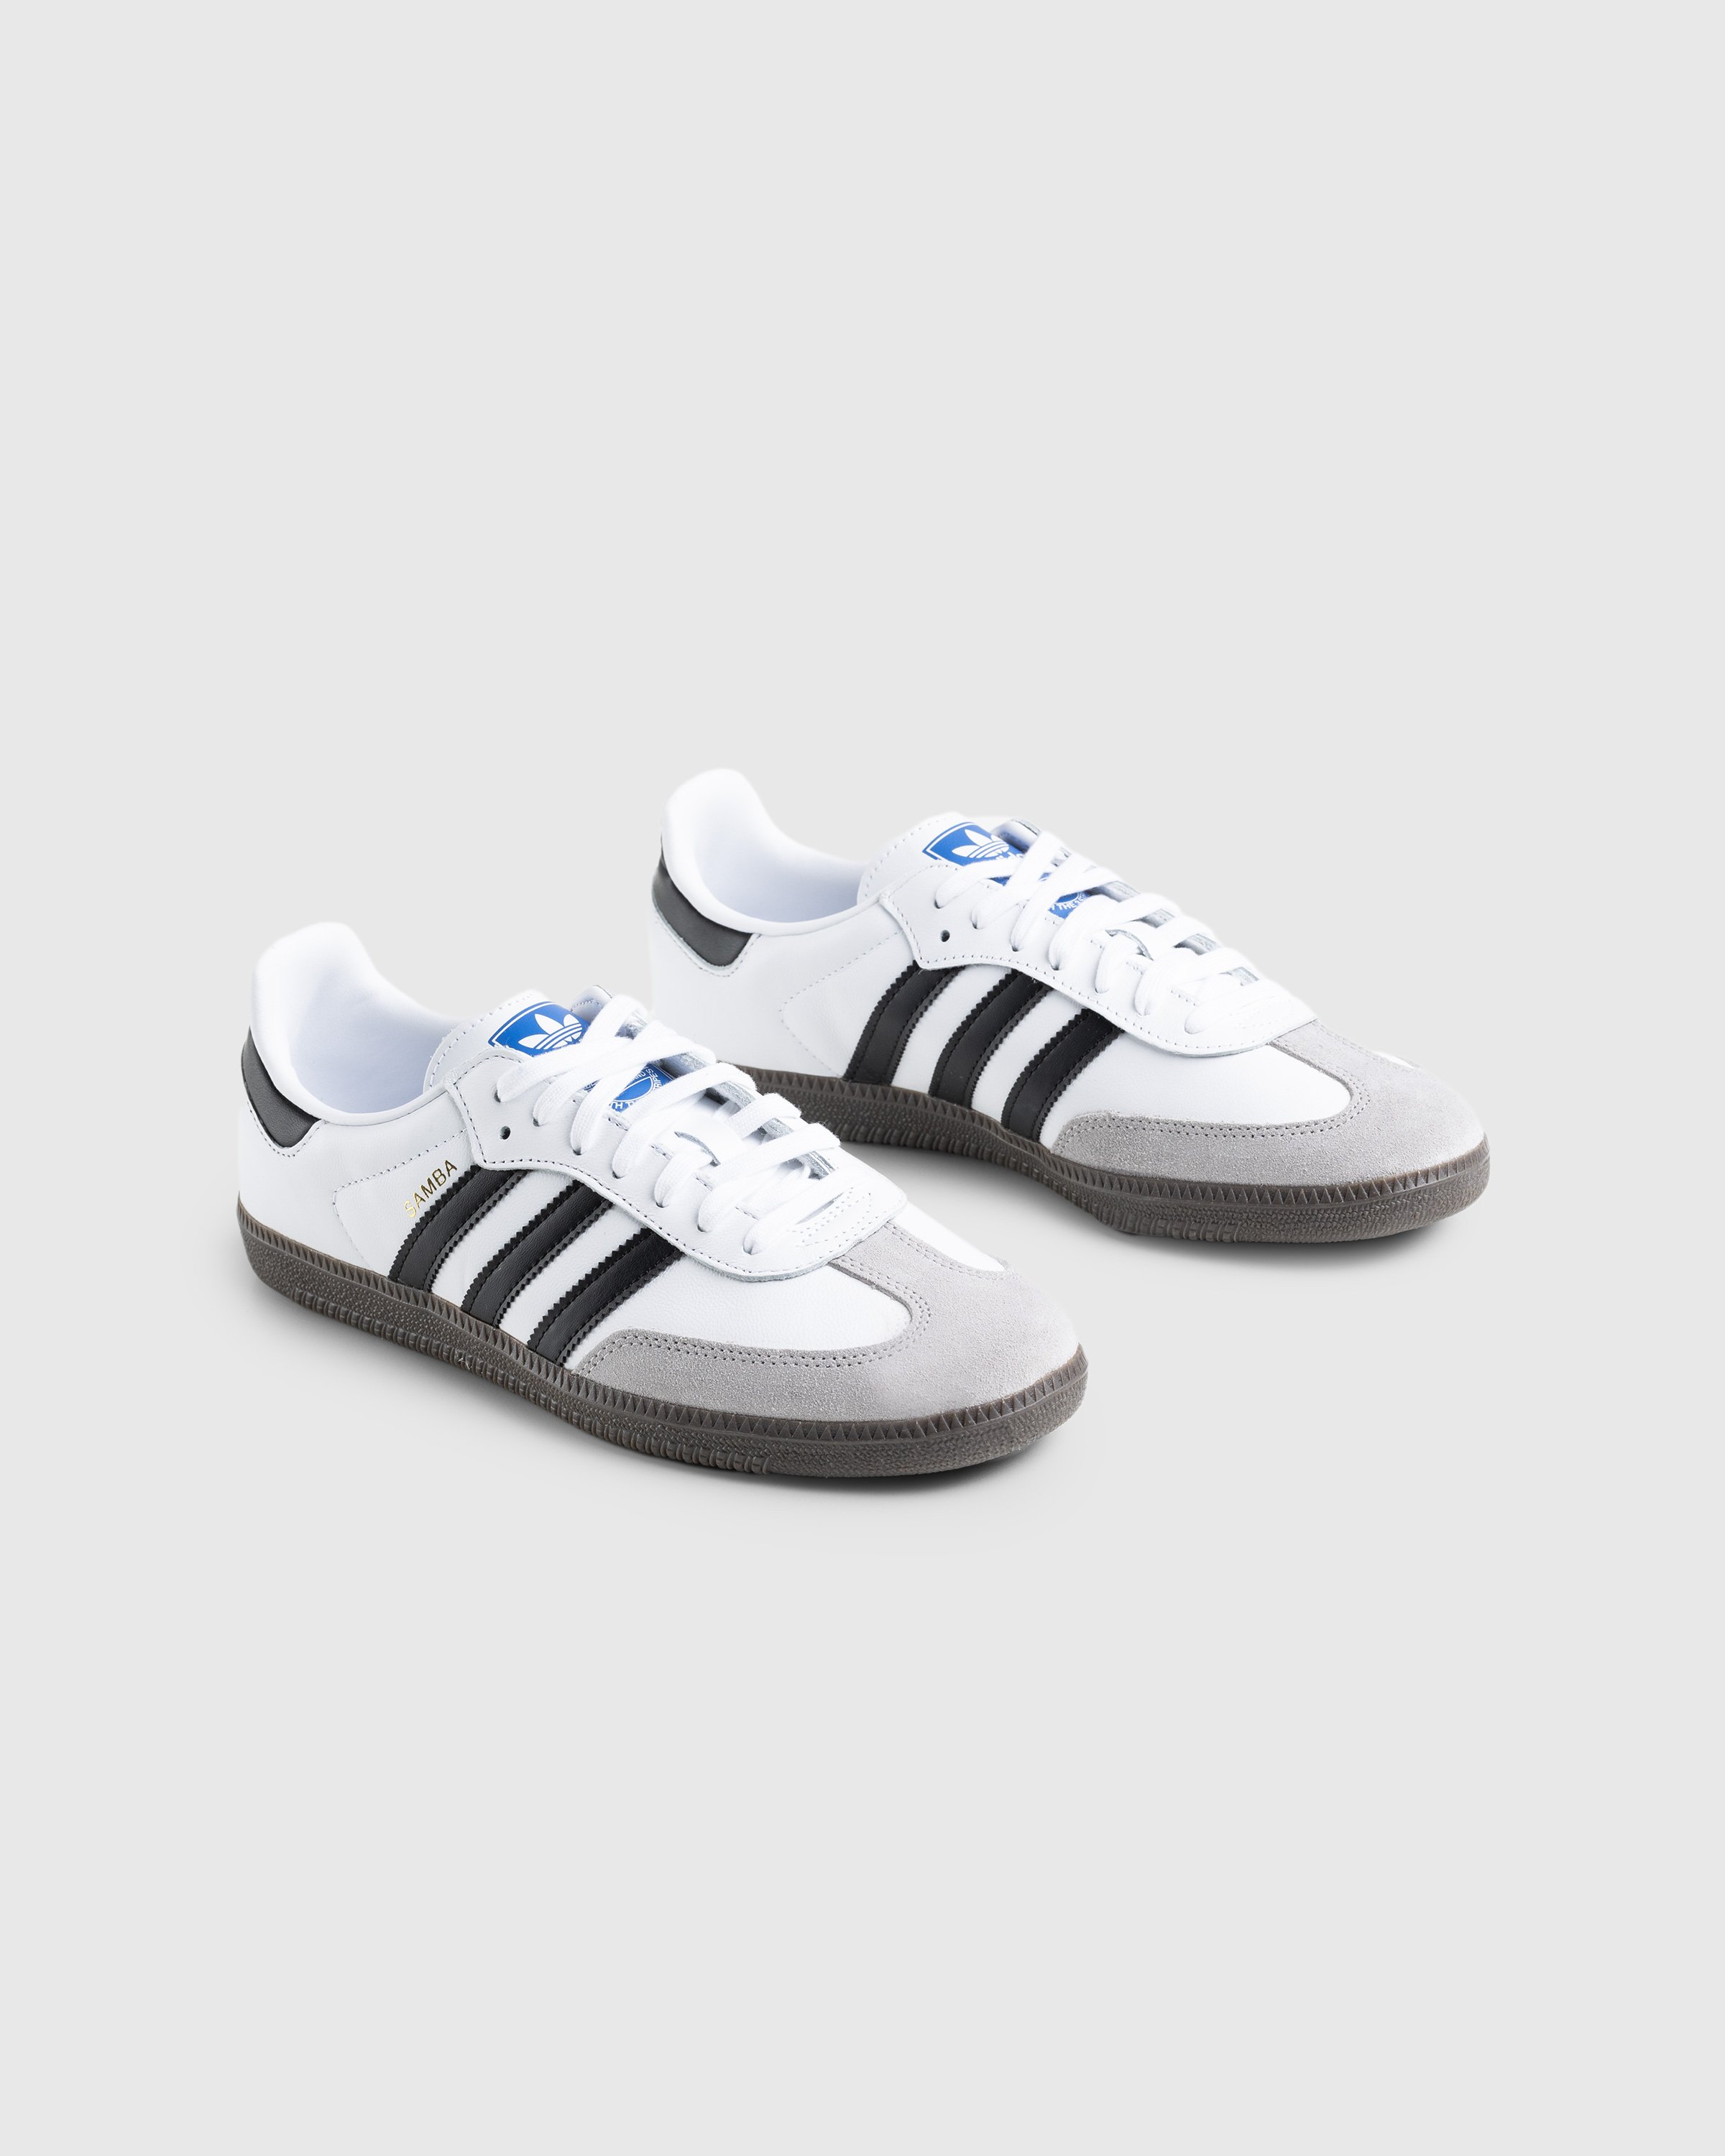 Adidas - Samba OG White - Footwear - White - Image 3